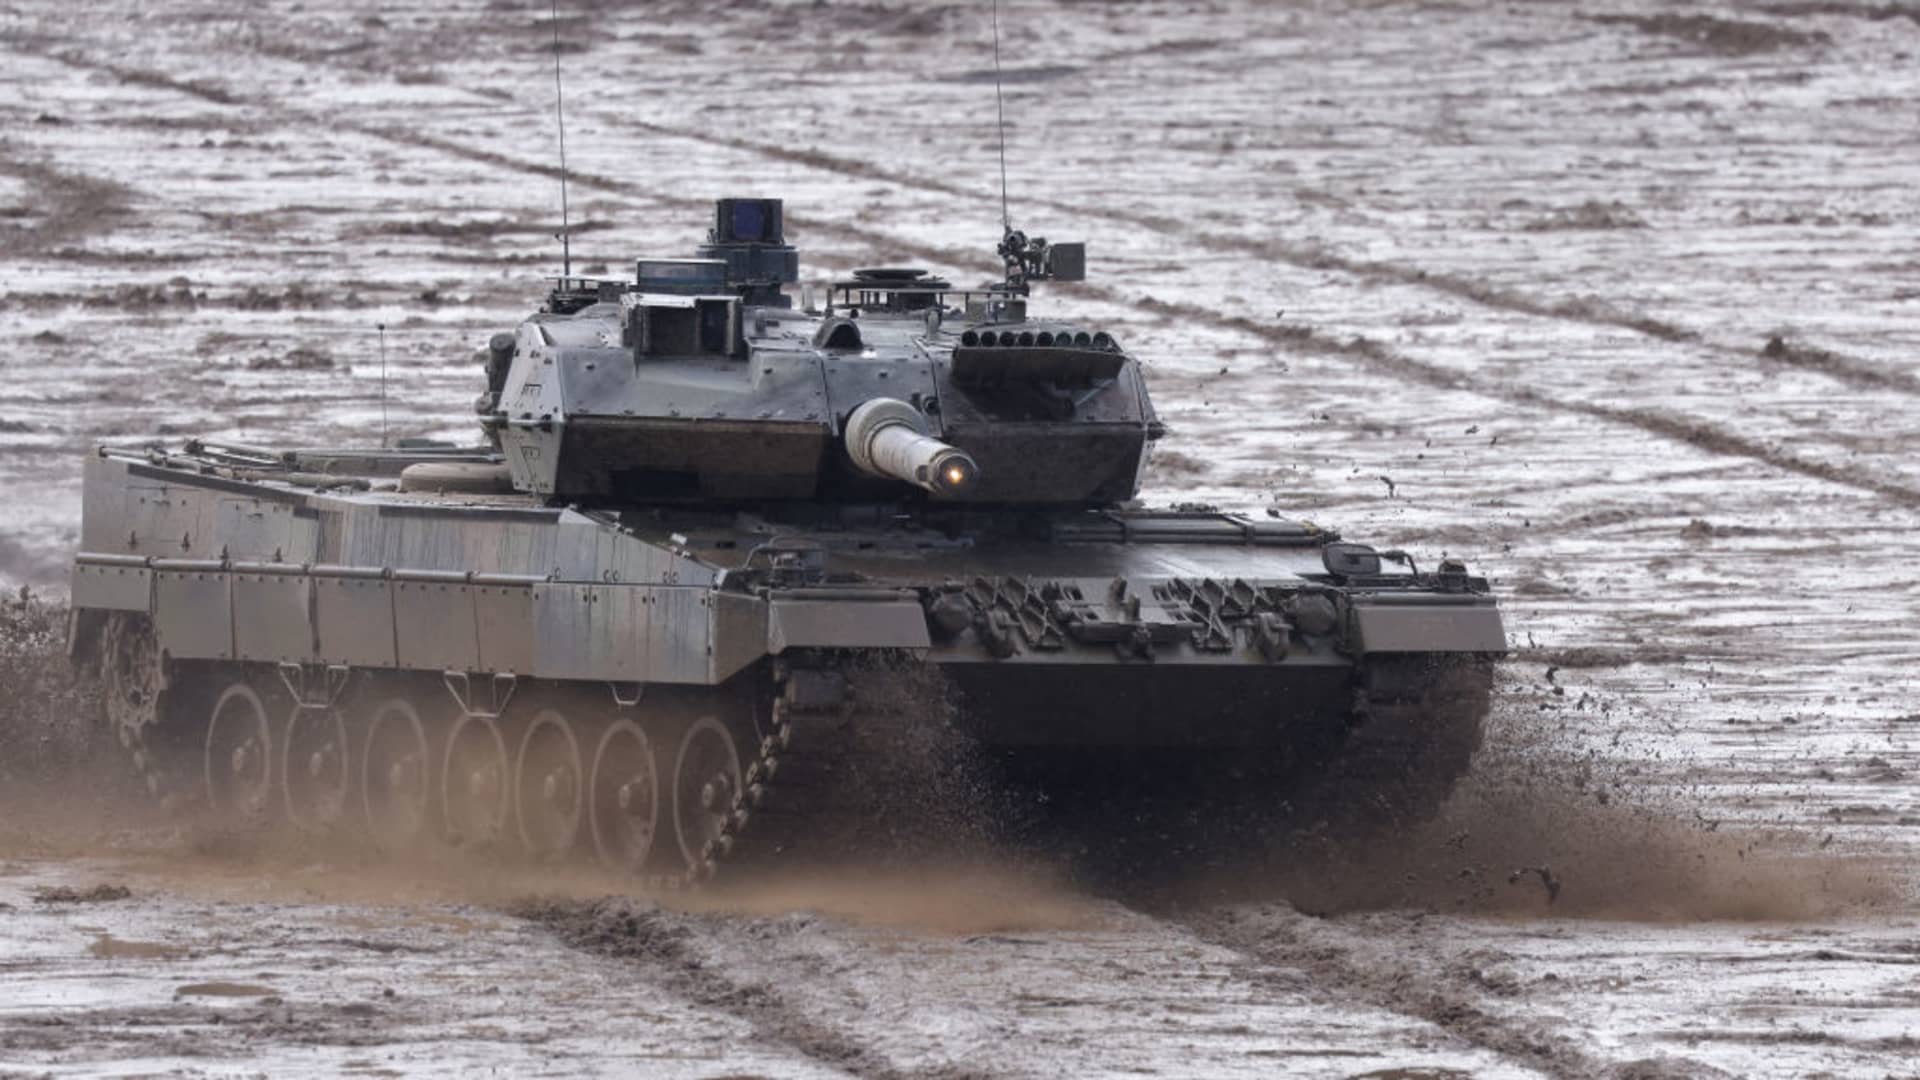 A Leopard 2 A6 heavy battle tank.